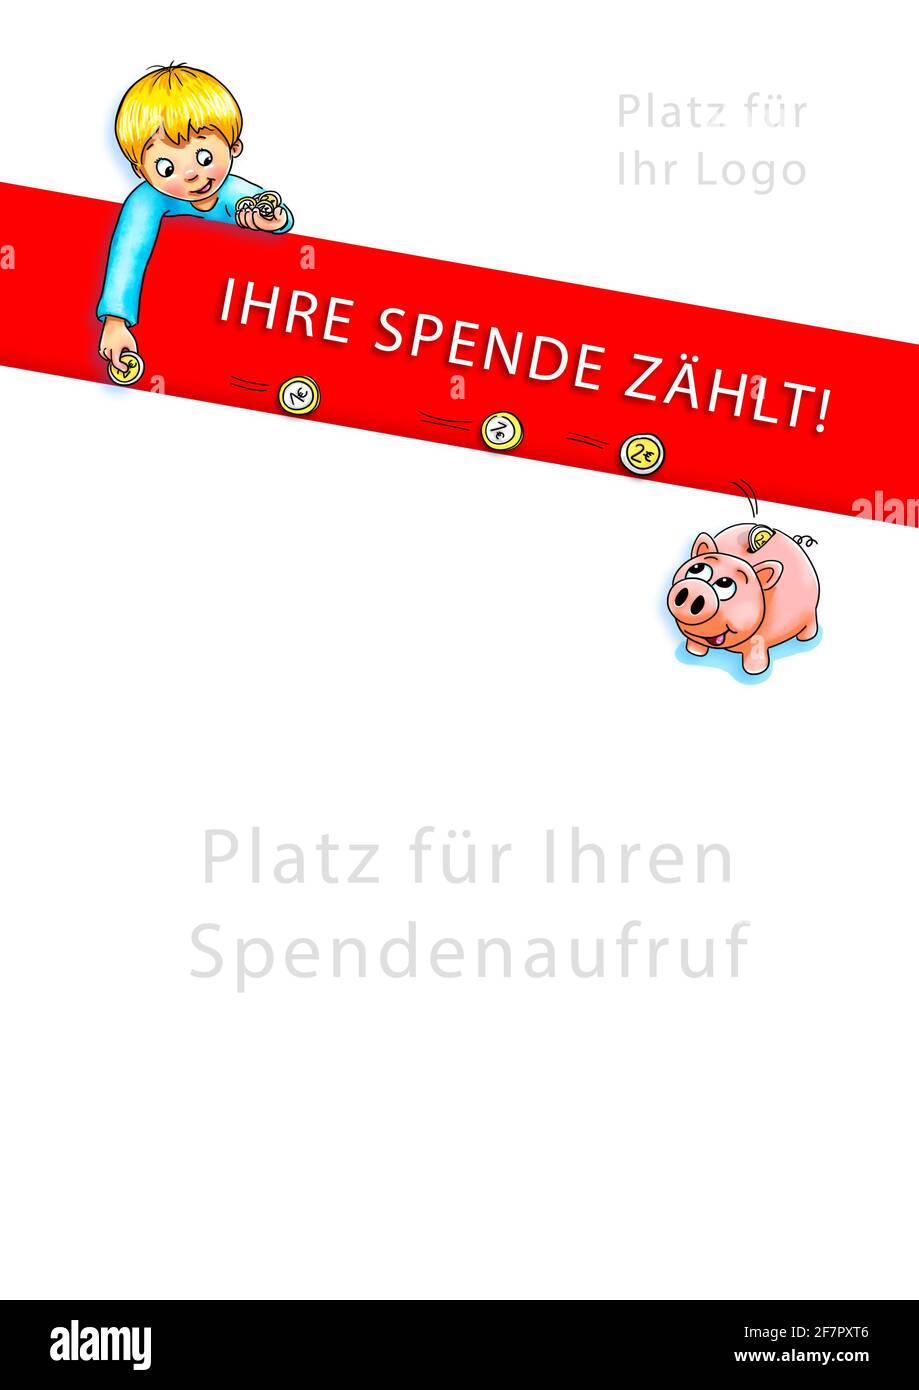 Schablonenlayout in A3 für Spendenaufruf, Junge lässt Euro-Münzen im Sparschwein Rollen, Freude im Schwein und Junge, Hintergrund weiß, Banner rot mit Aufschrift Stockfoto